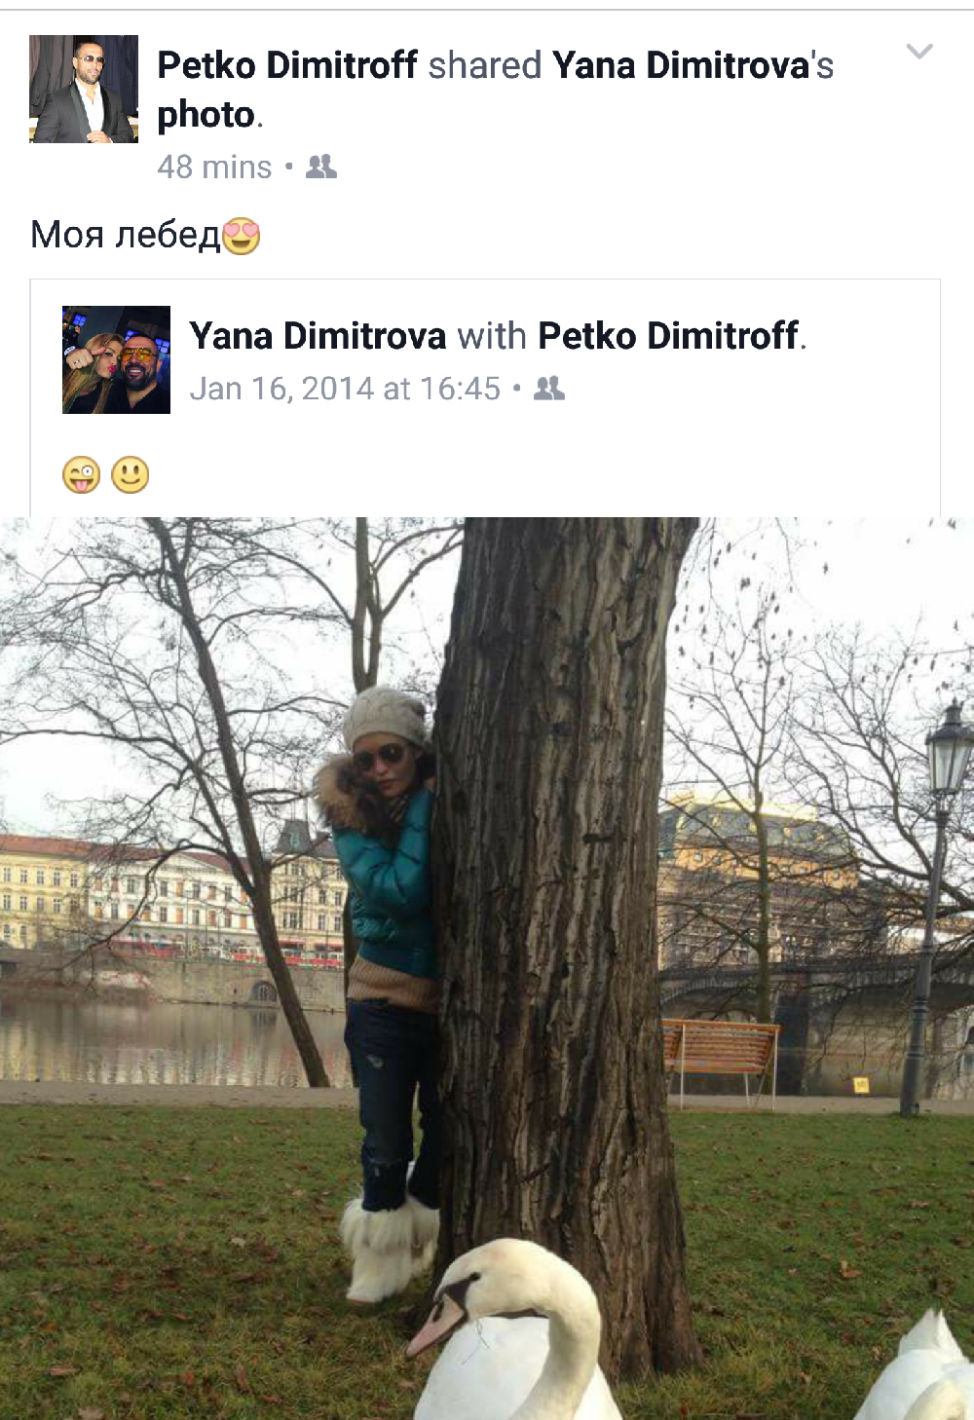 Сълзите на Яна разтърсиха всички: Петко Димитров направи неочакваното след 3 години брак! (още подробности) - Снимка 2